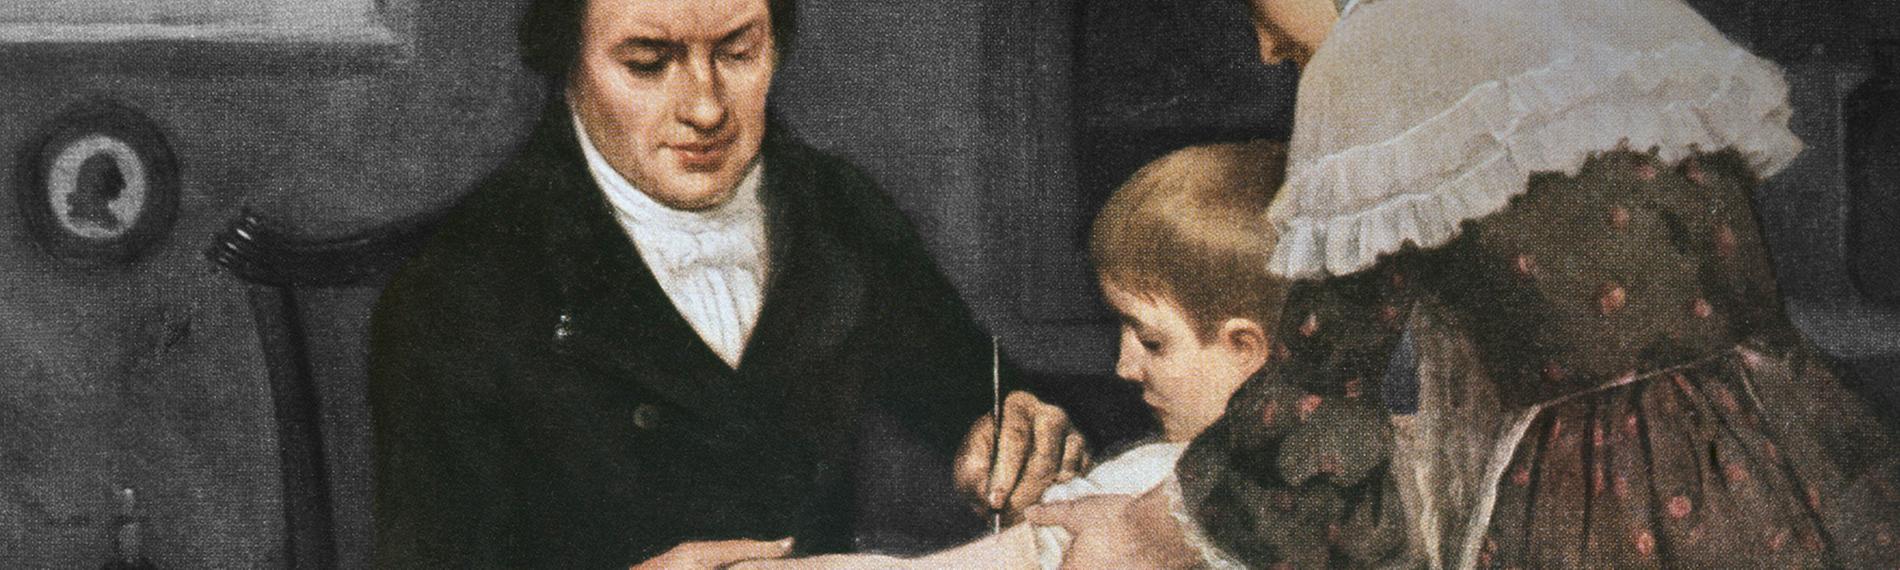 Historisches Gemälde - Ein kleiner Junge wird von einem Arzt geimpft